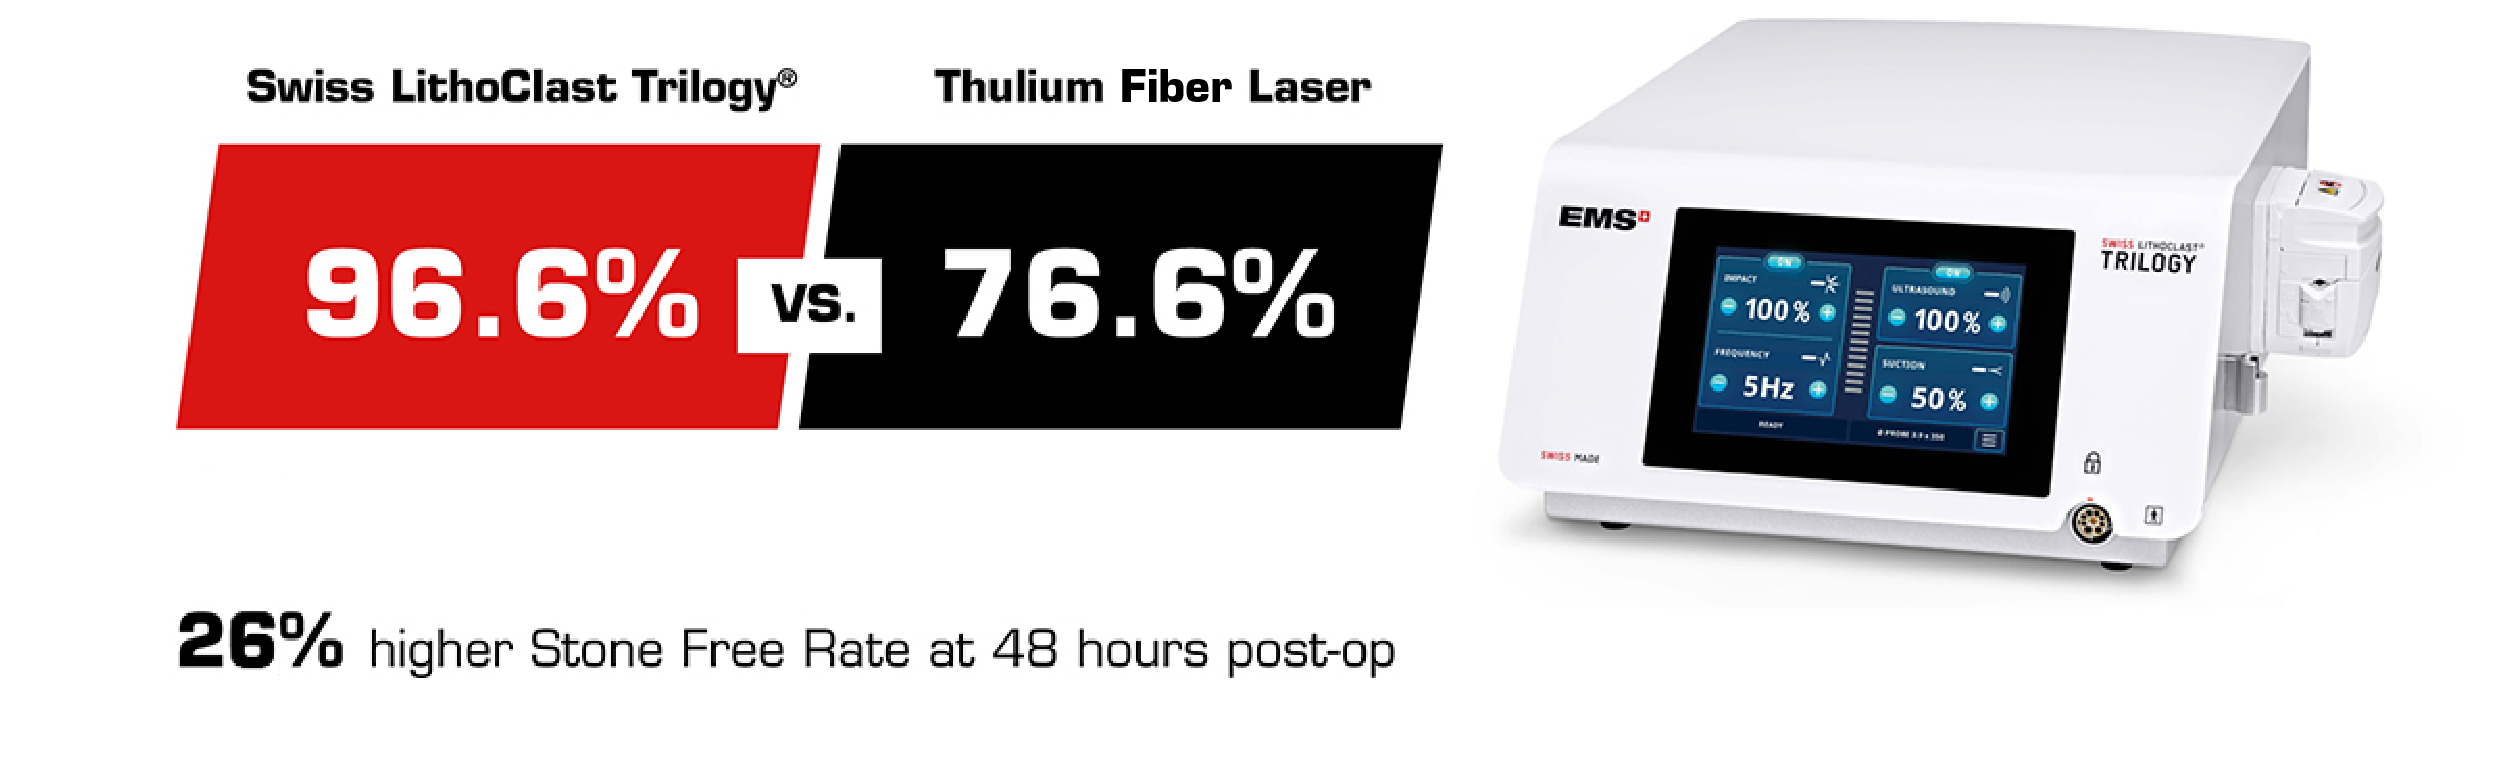 thulium fiber